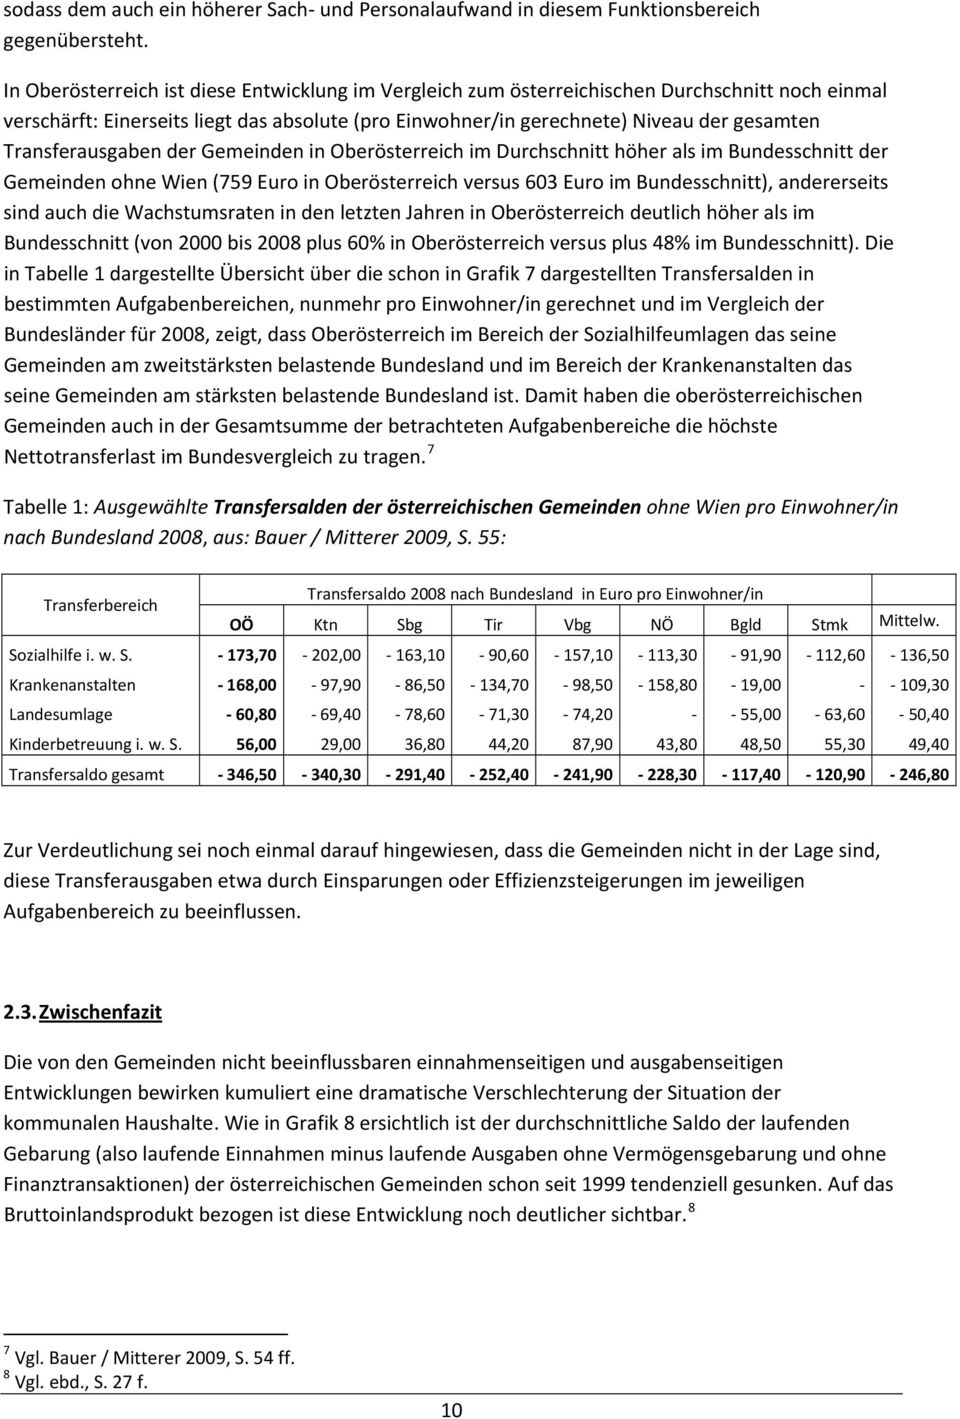 Transferausgaben der Gemeinden in Oberösterreich im Durchschnitt höher als im Bundesschnitt der Gemeinden ohne Wien (759 Euro in Oberösterreich versus 603 Euro im Bundesschnitt), andererseits sind